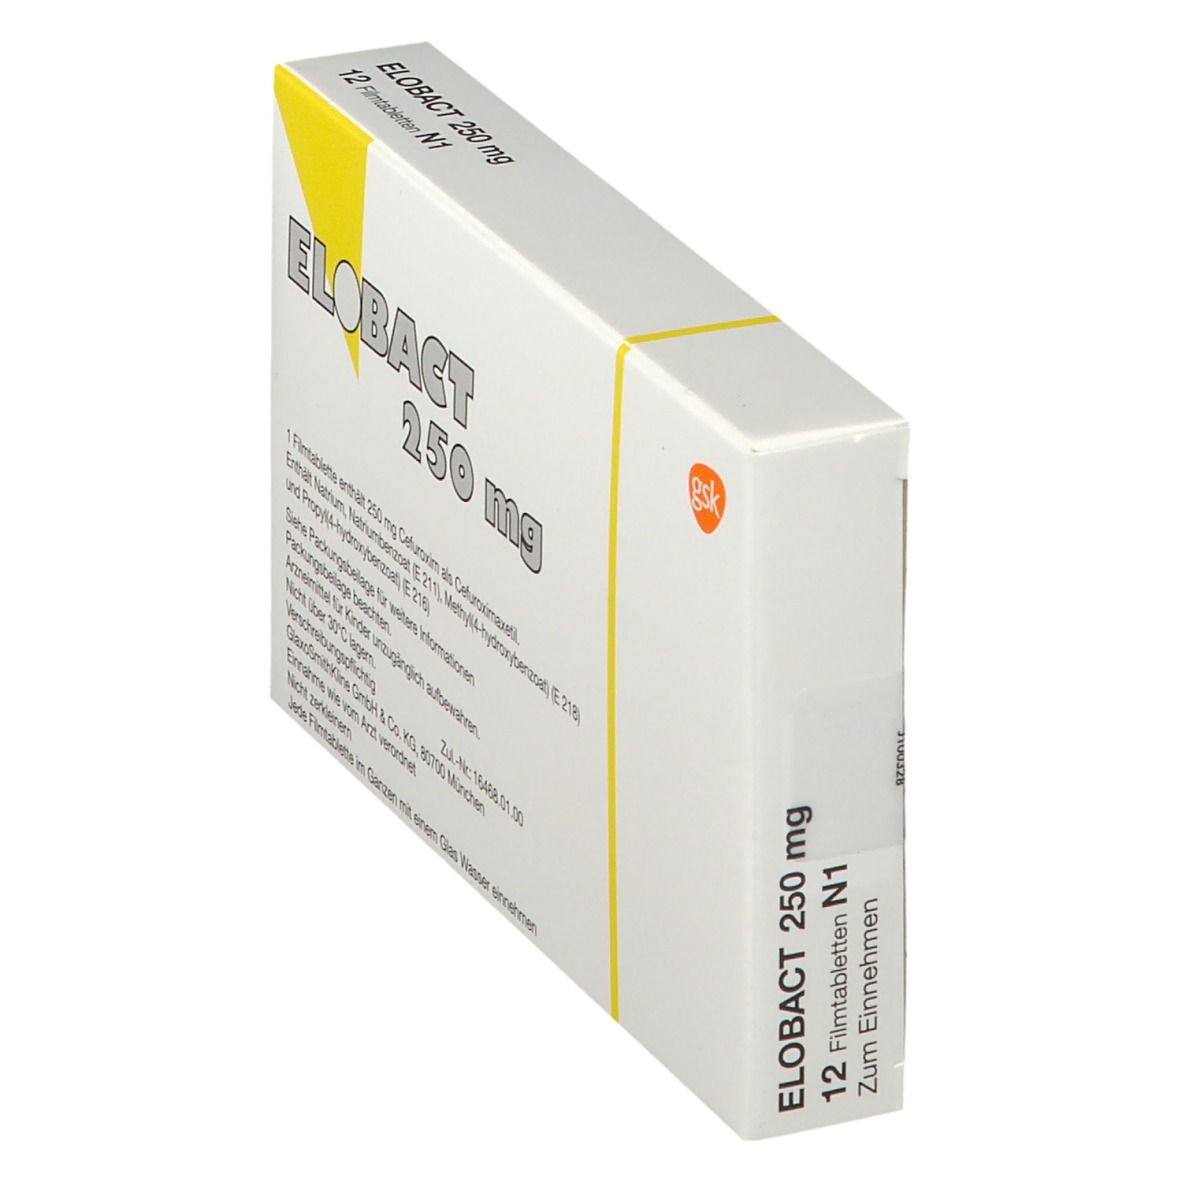 ELOBACT® 250 mg